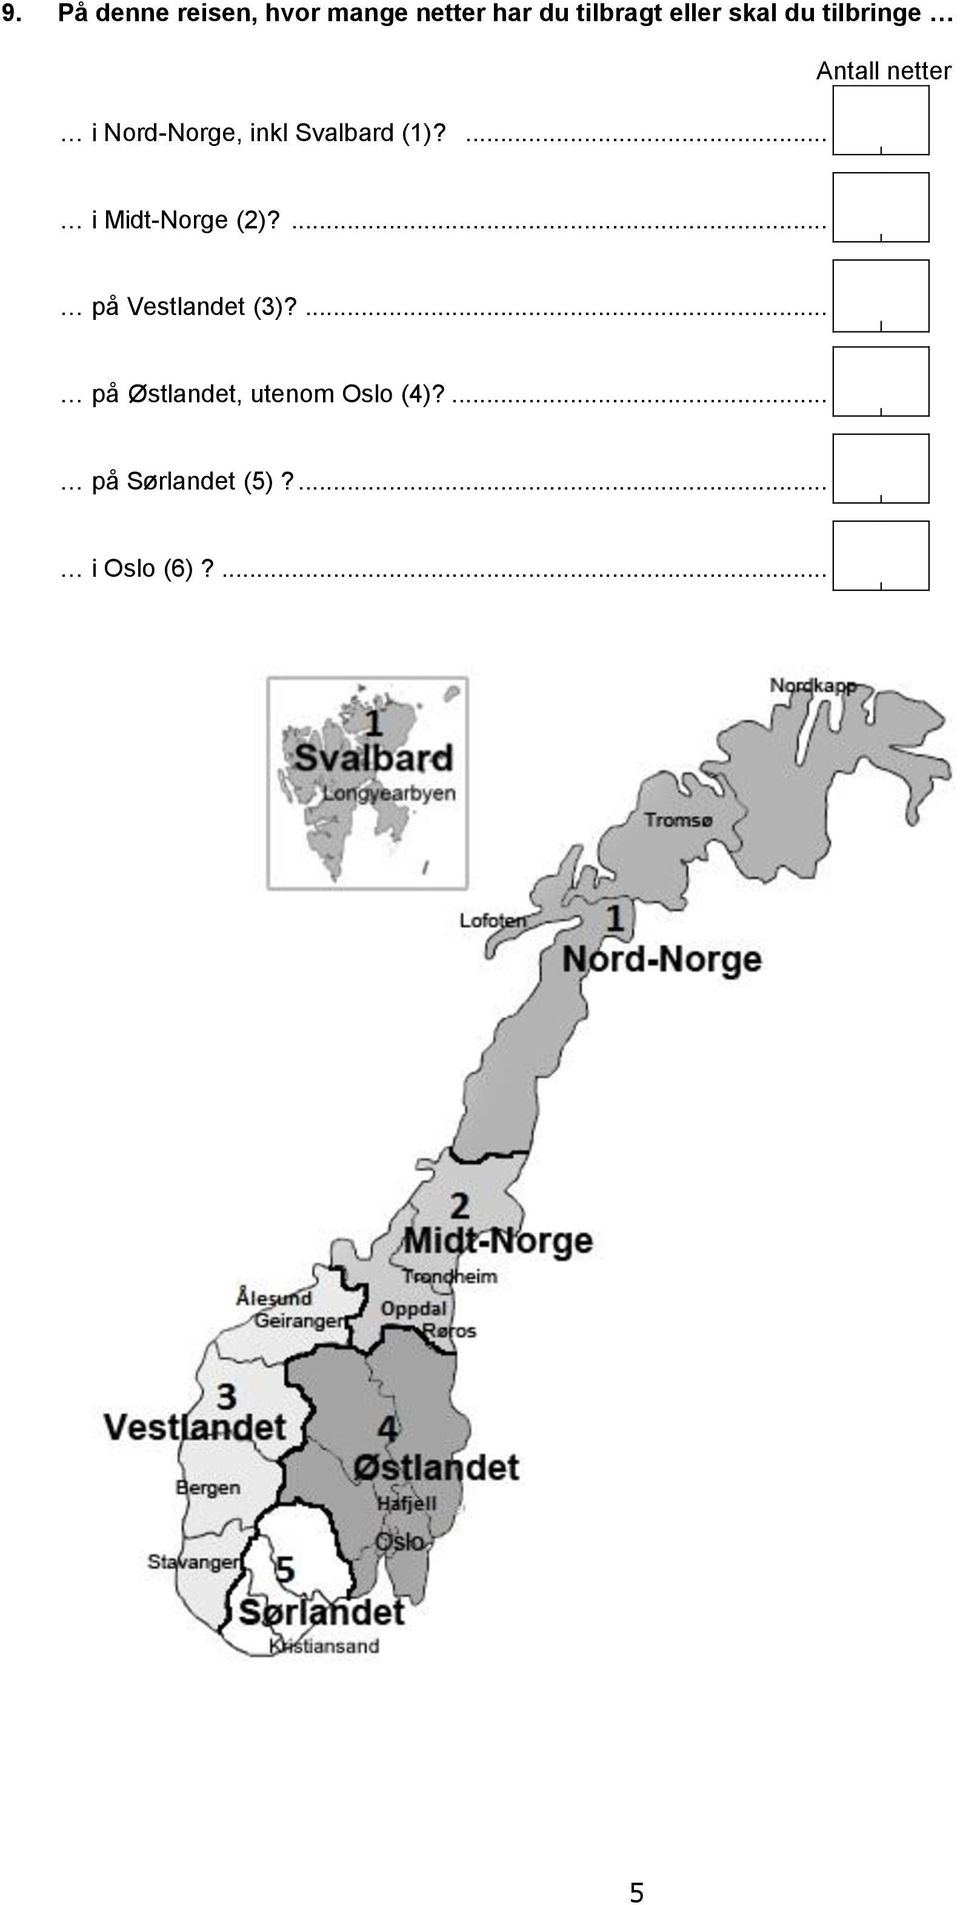 ... Antall netter i Midt-Norge (2)?... på Vestlandet (3)?